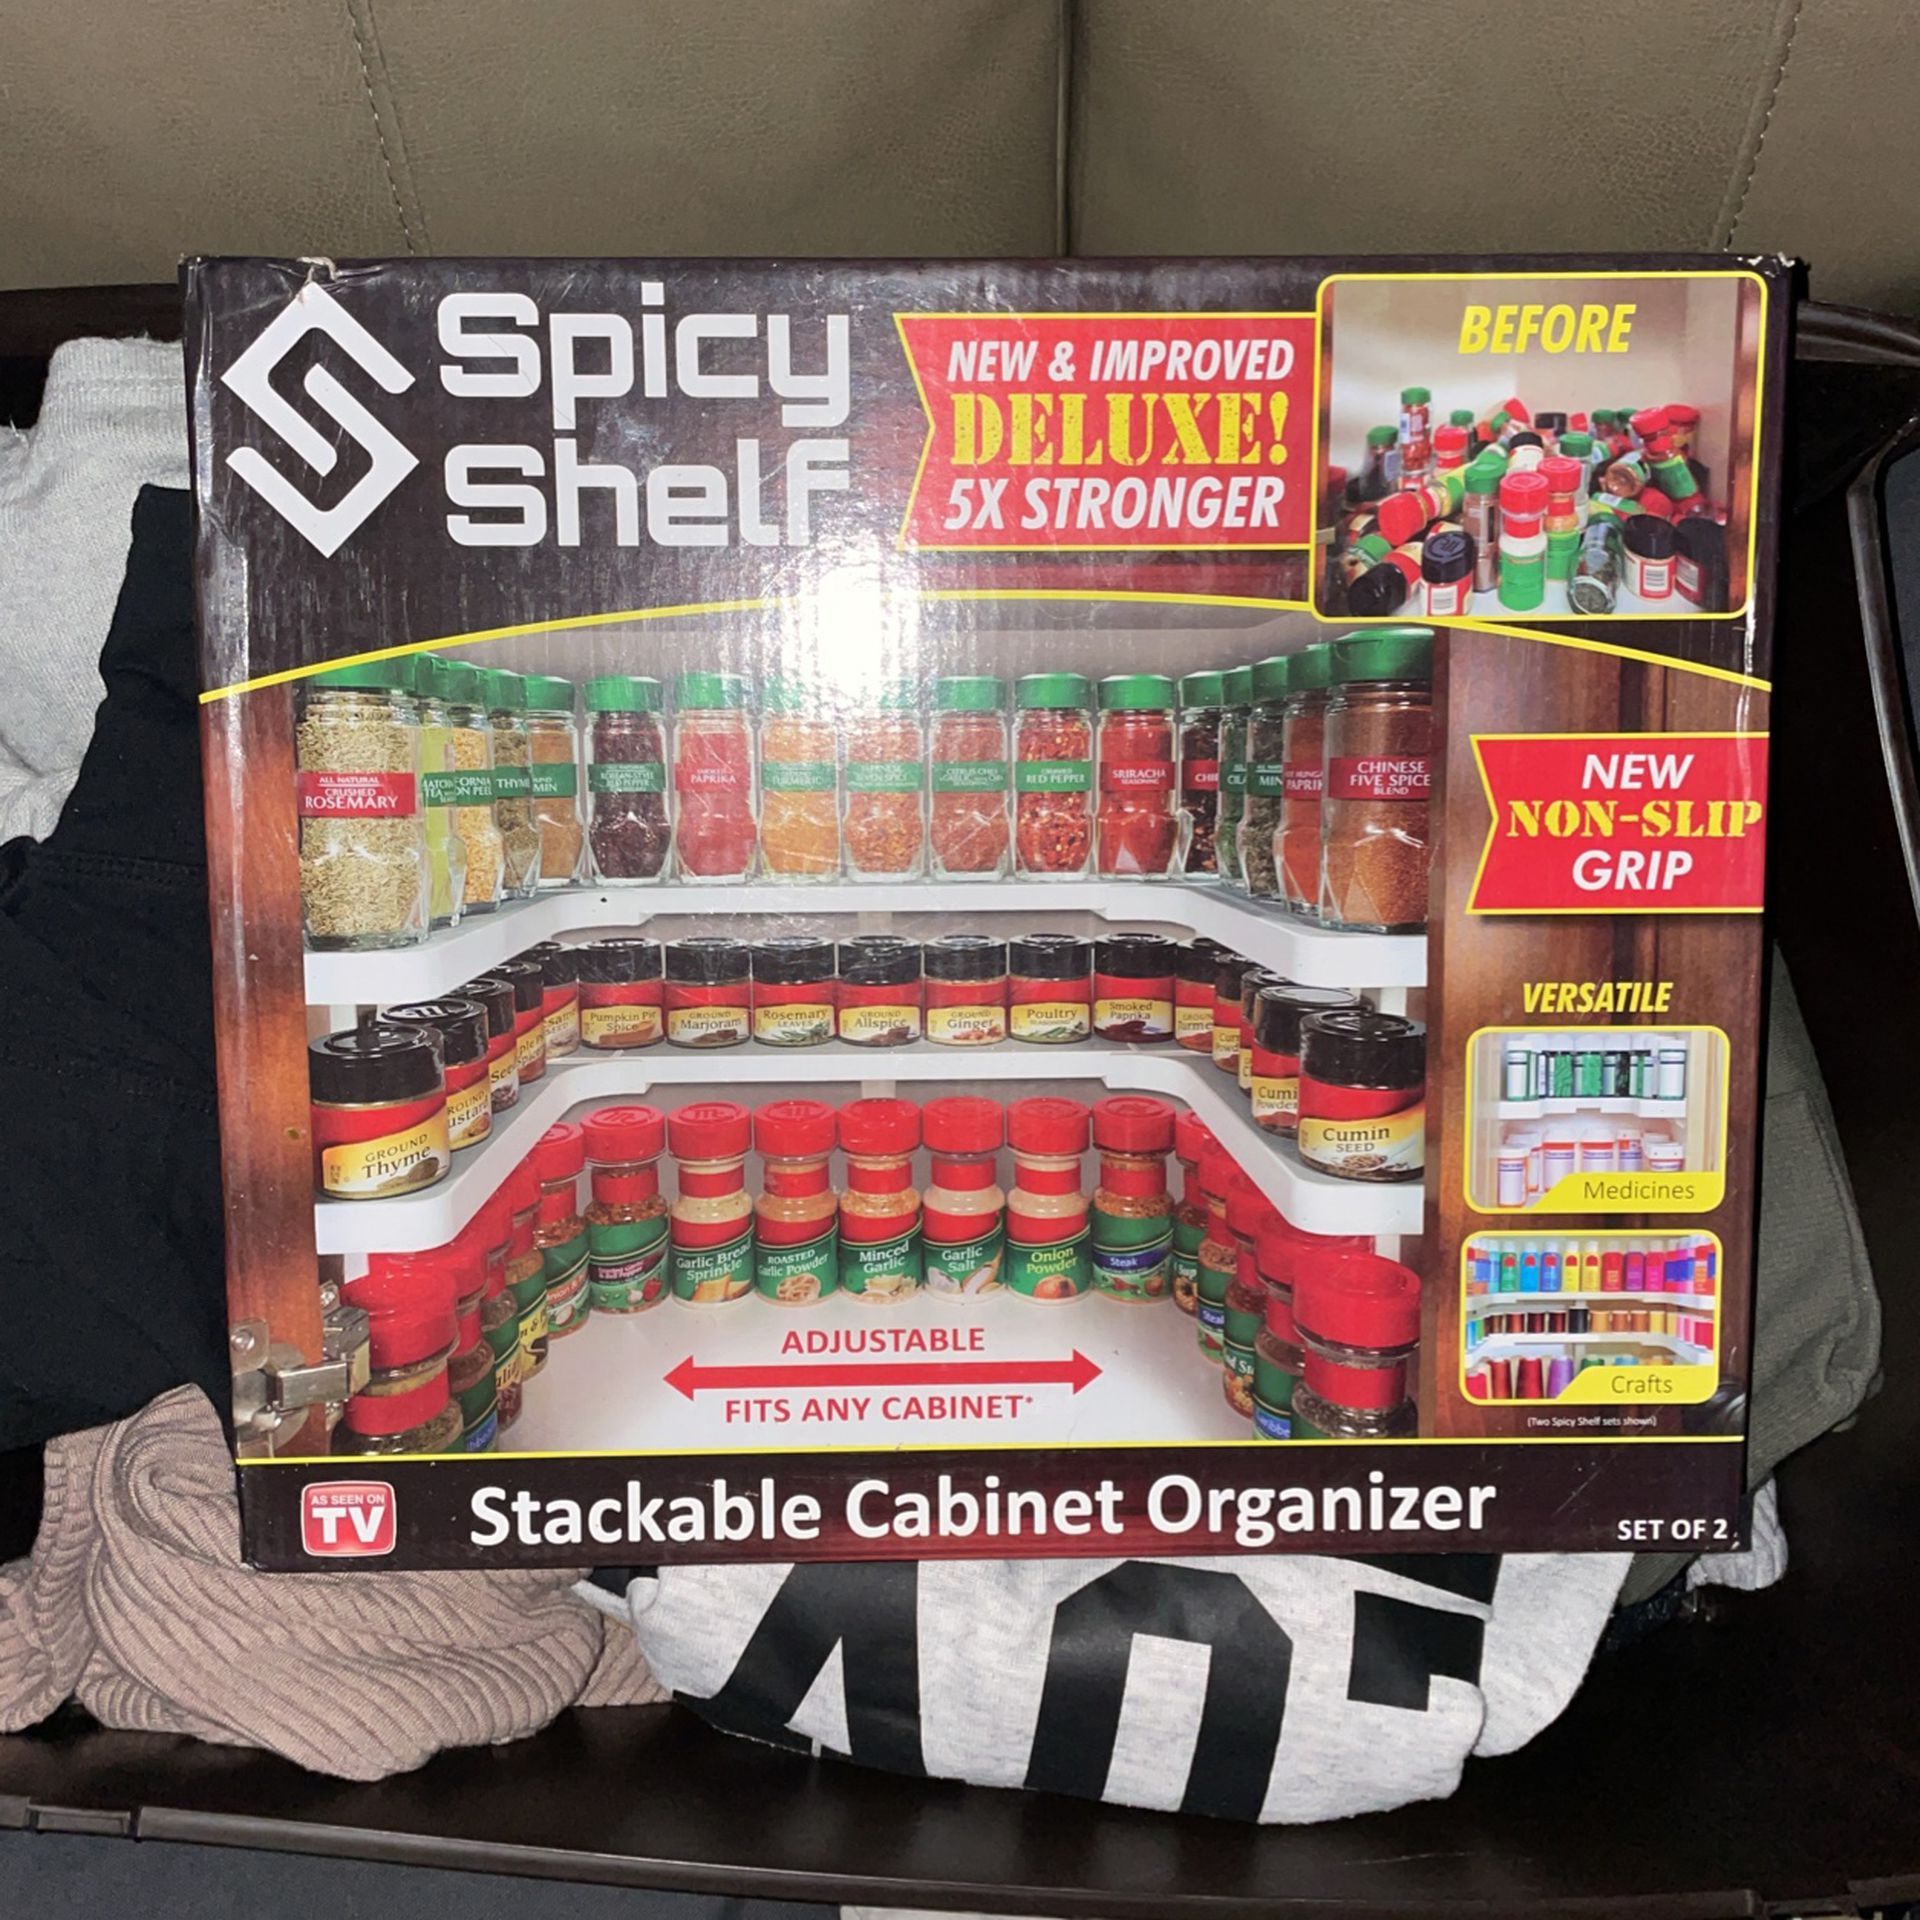 Spicy Shelf